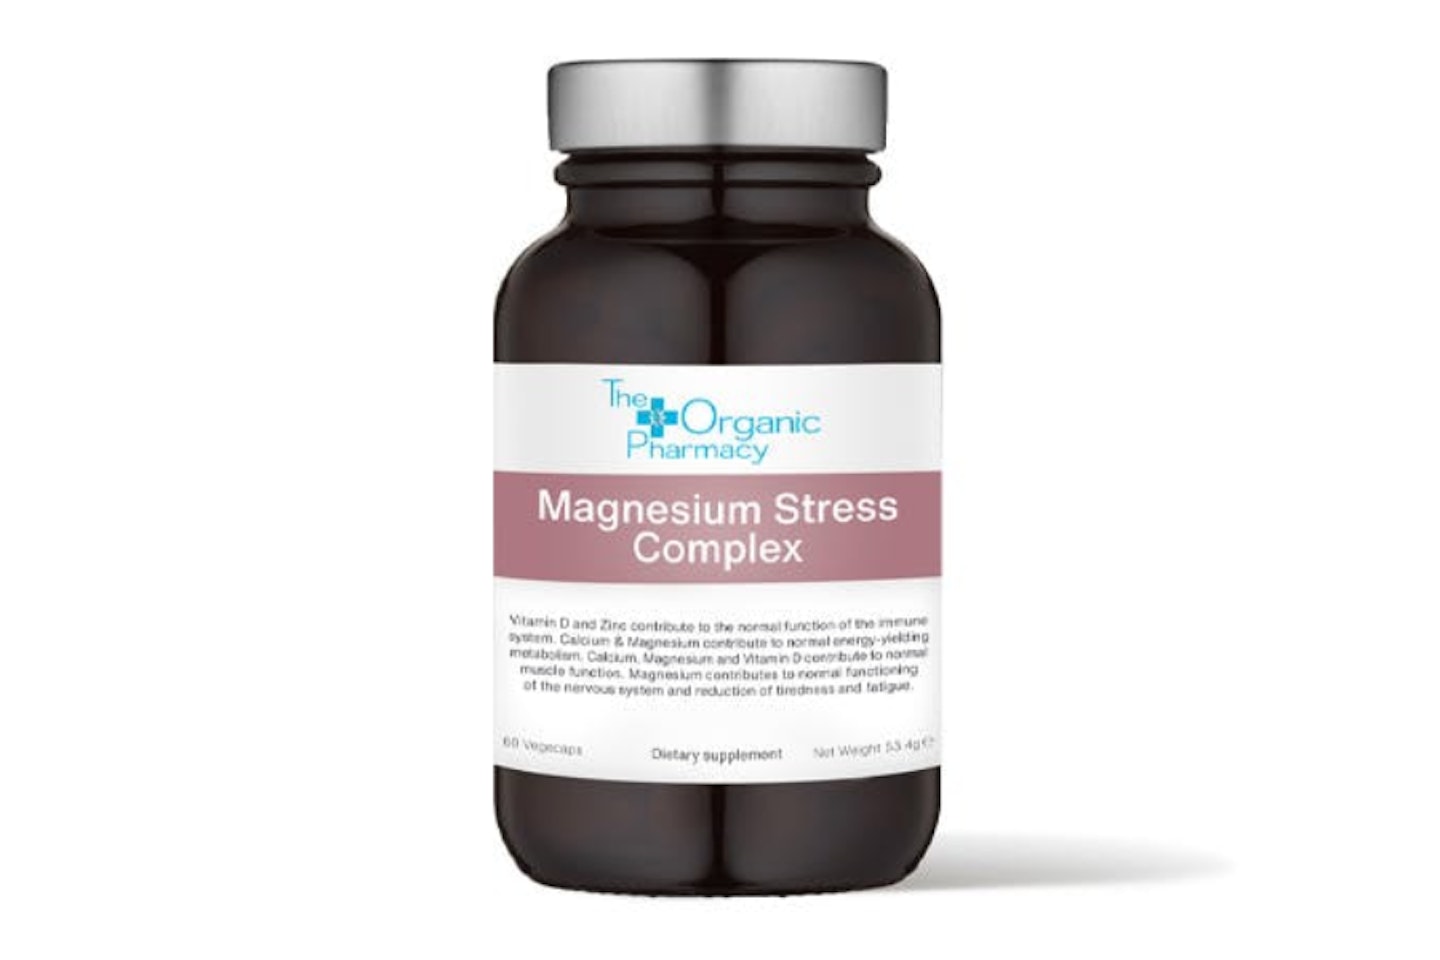 Magnesium Stress Complex